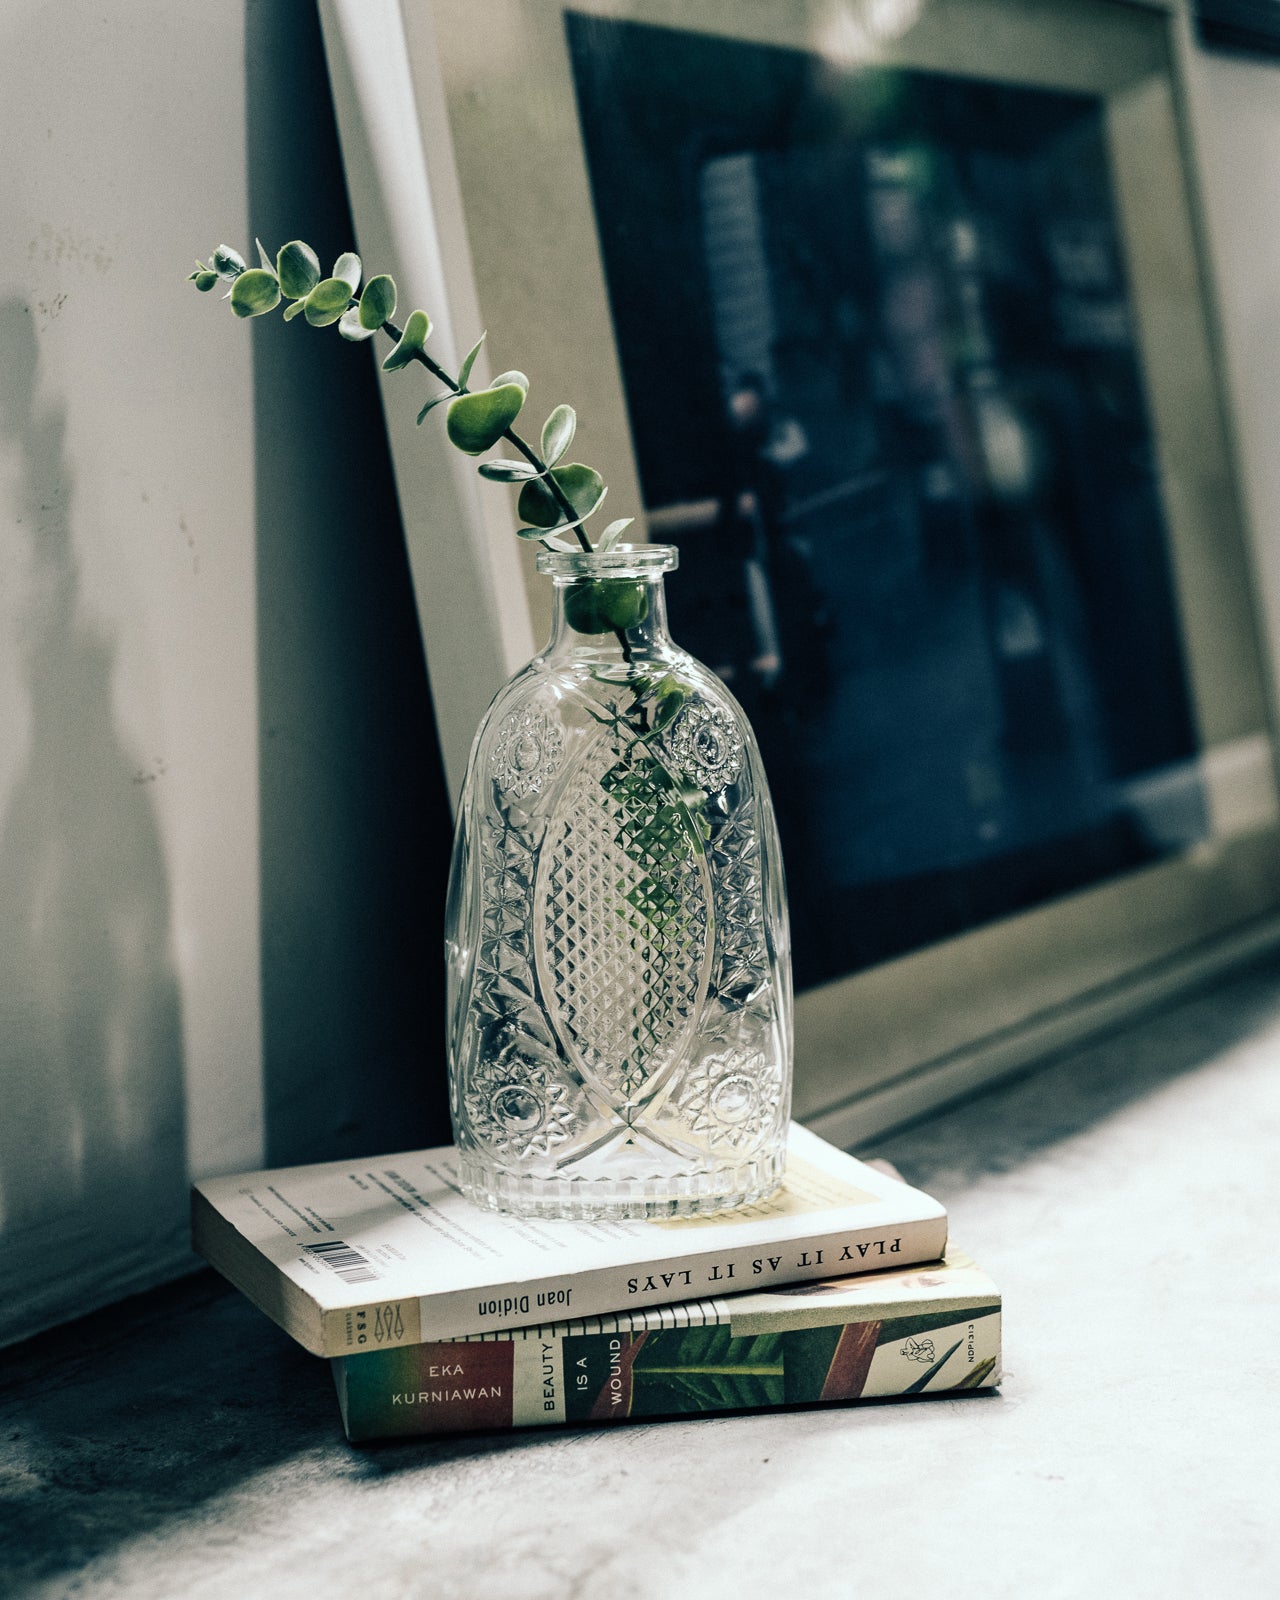 Antoinette Glass Vase